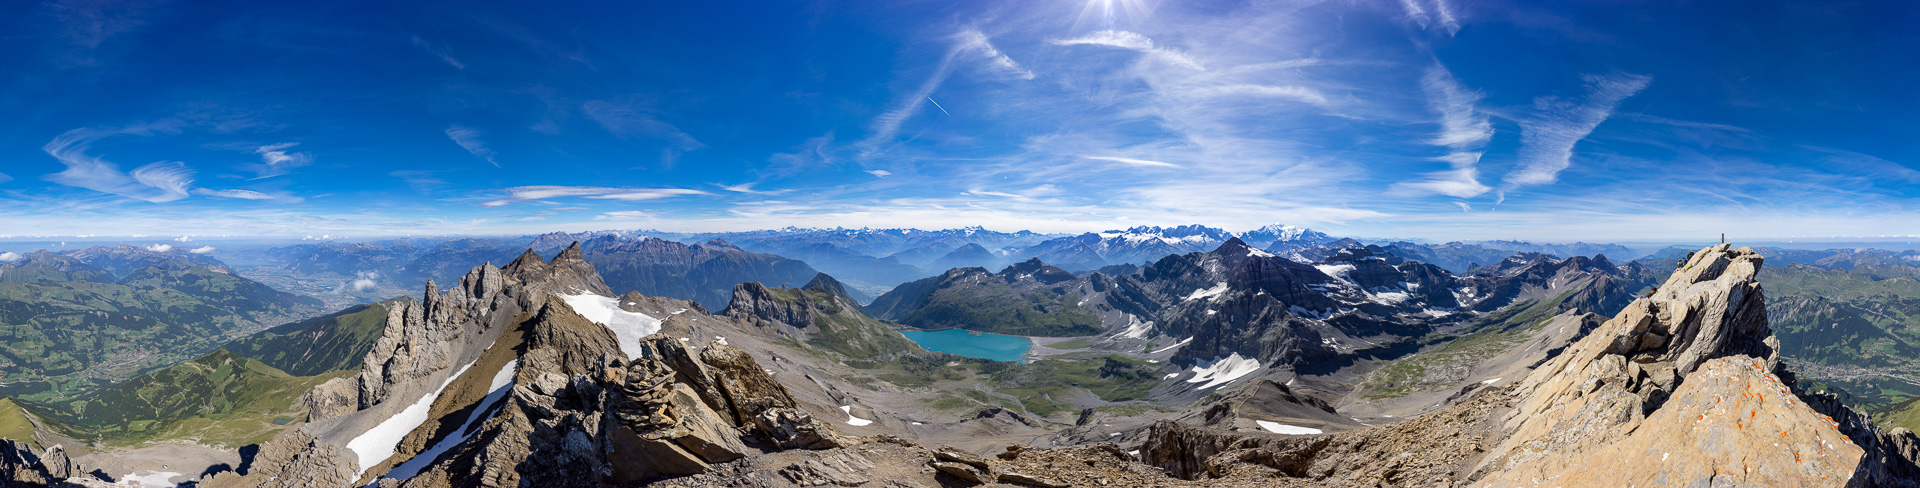 Gipfelpanorama mit Blick auf die Berner Alpen, Walliser Alpen und Mont Blanc.